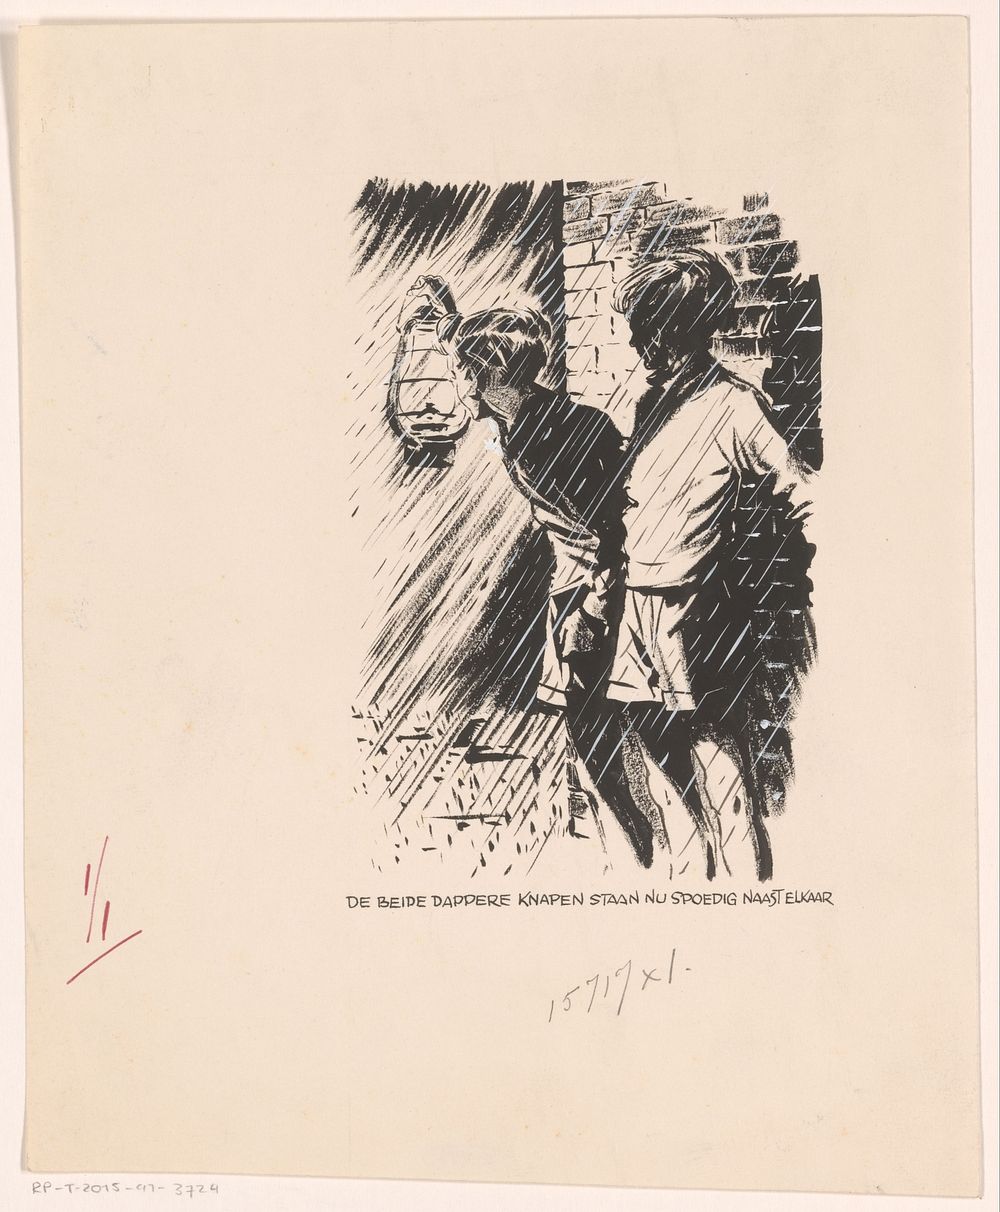 Twee jongens bij een muur in de regen (c. 1920 - c. 1950) by anonymous